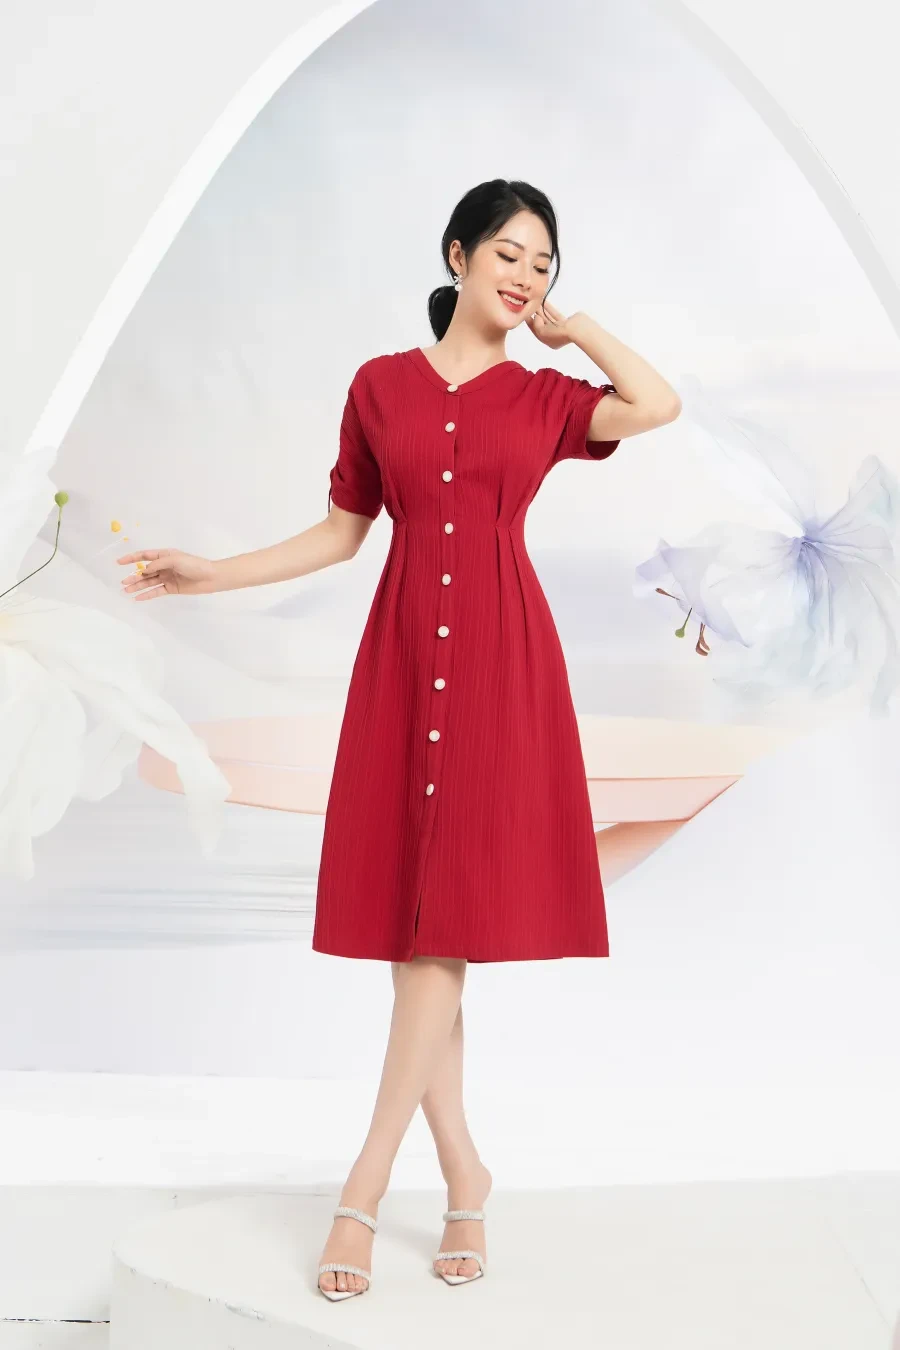 May đồng phục váy liền công sở rẻ đẹp chất lượng tại Hà Nội